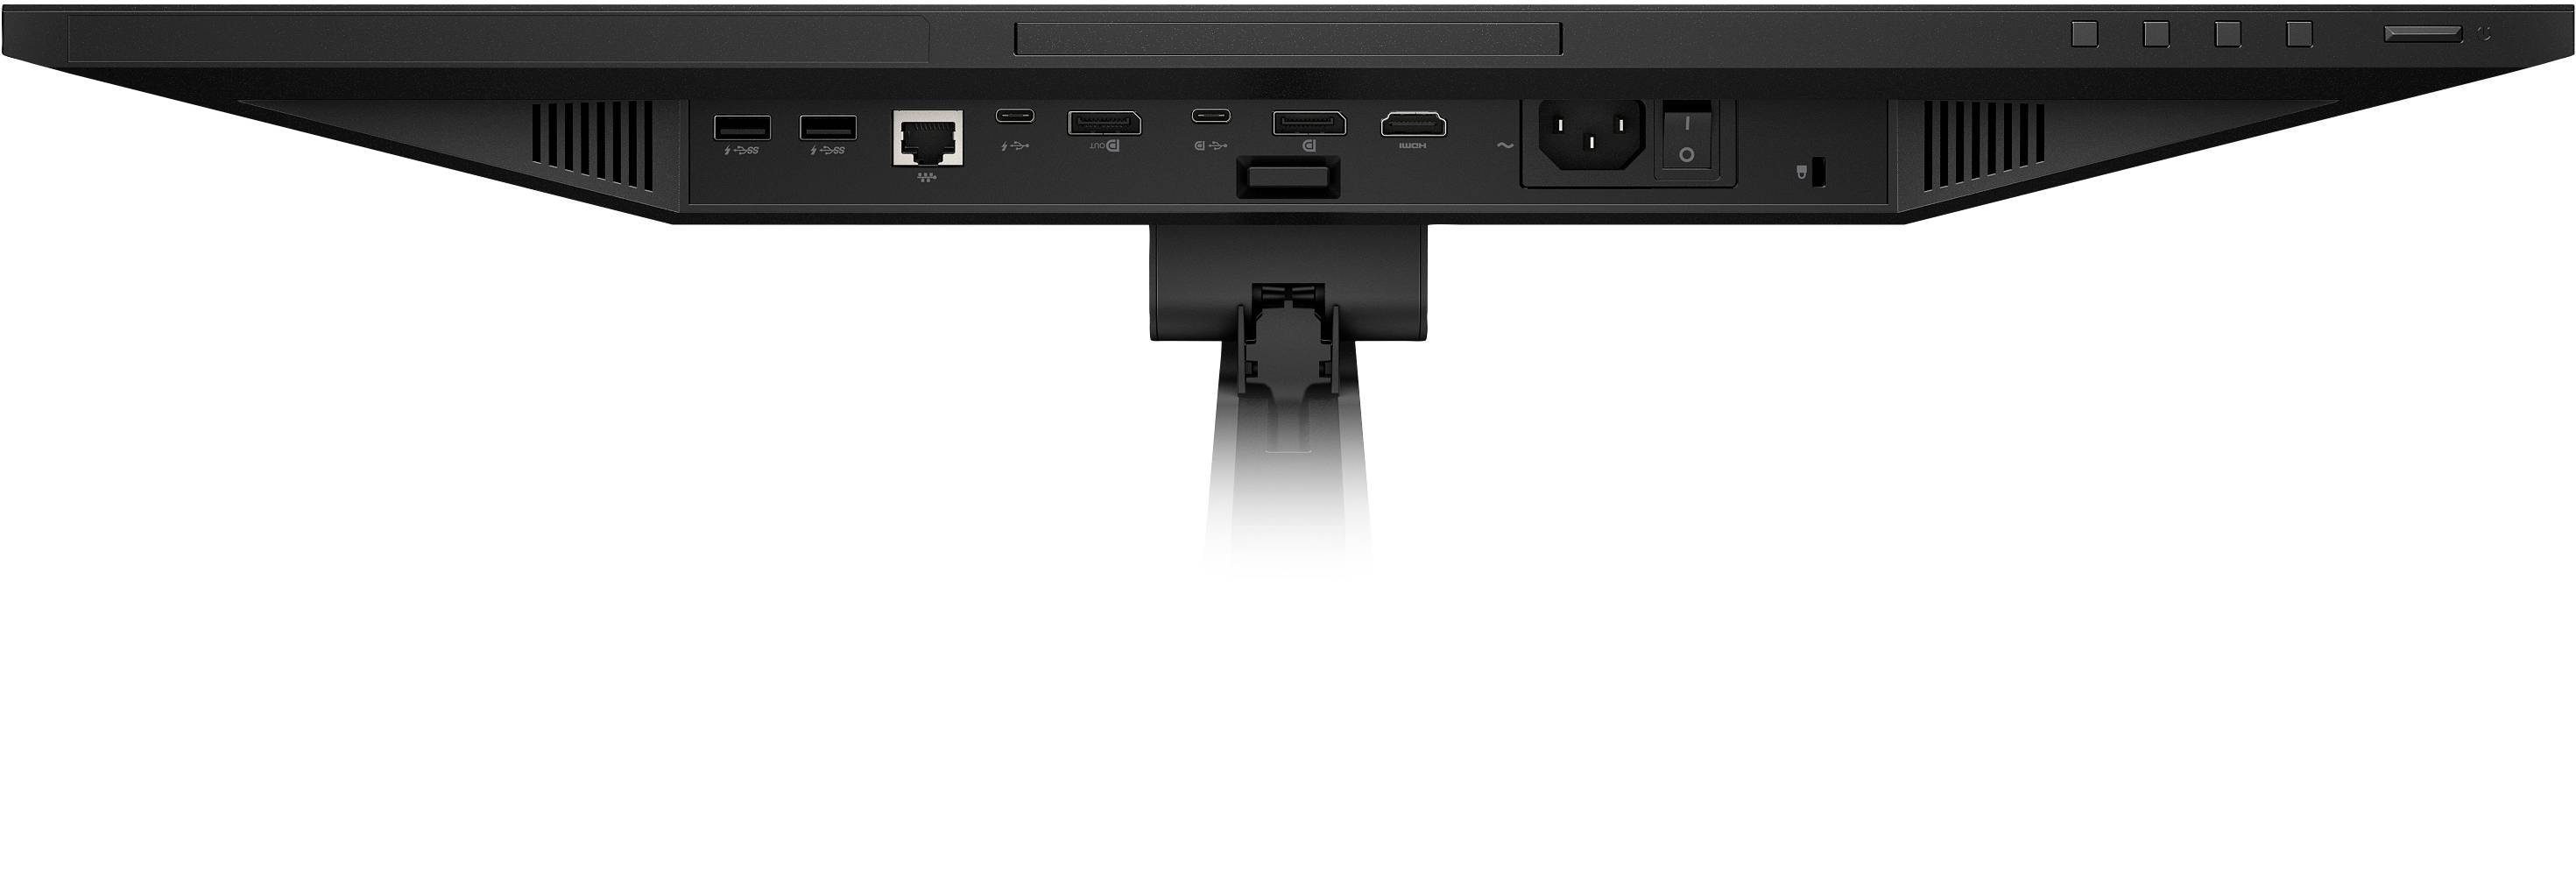 Rca Informatique - image du produit : E24D G4 USB-C DOCKING FHD 24IN 16:9 1000:1 5MS